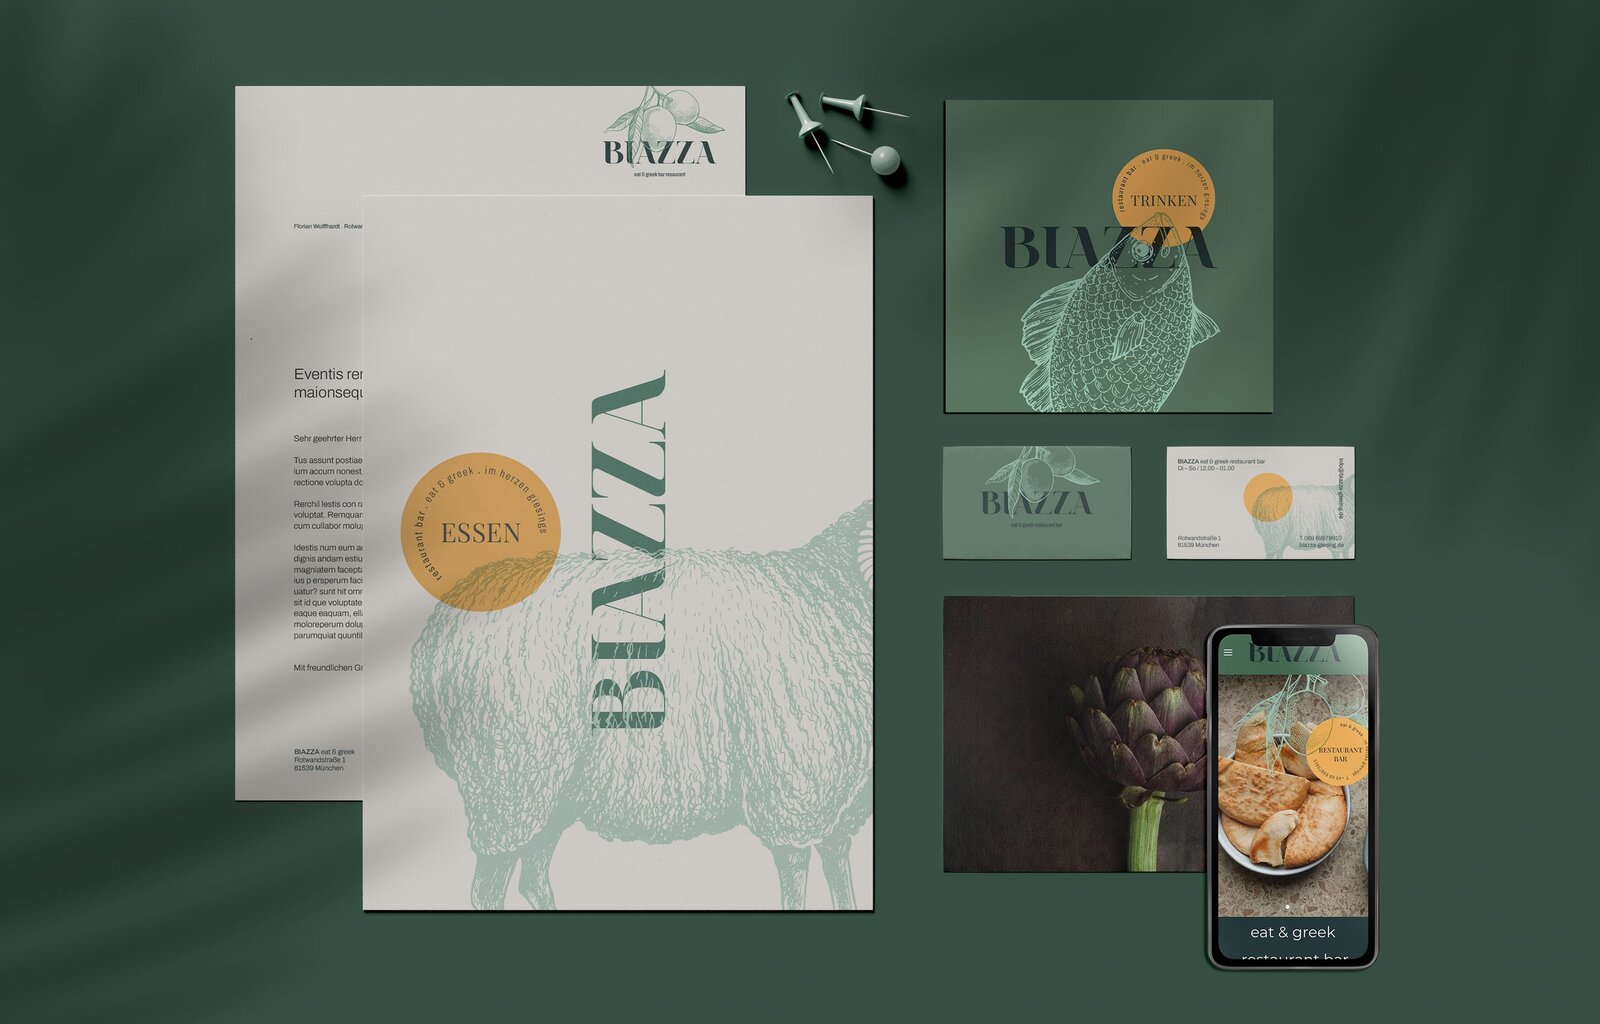 Die Marken Agentur hat das Biazza von Print über Online und von Website über Social Media an den Start gebracht.